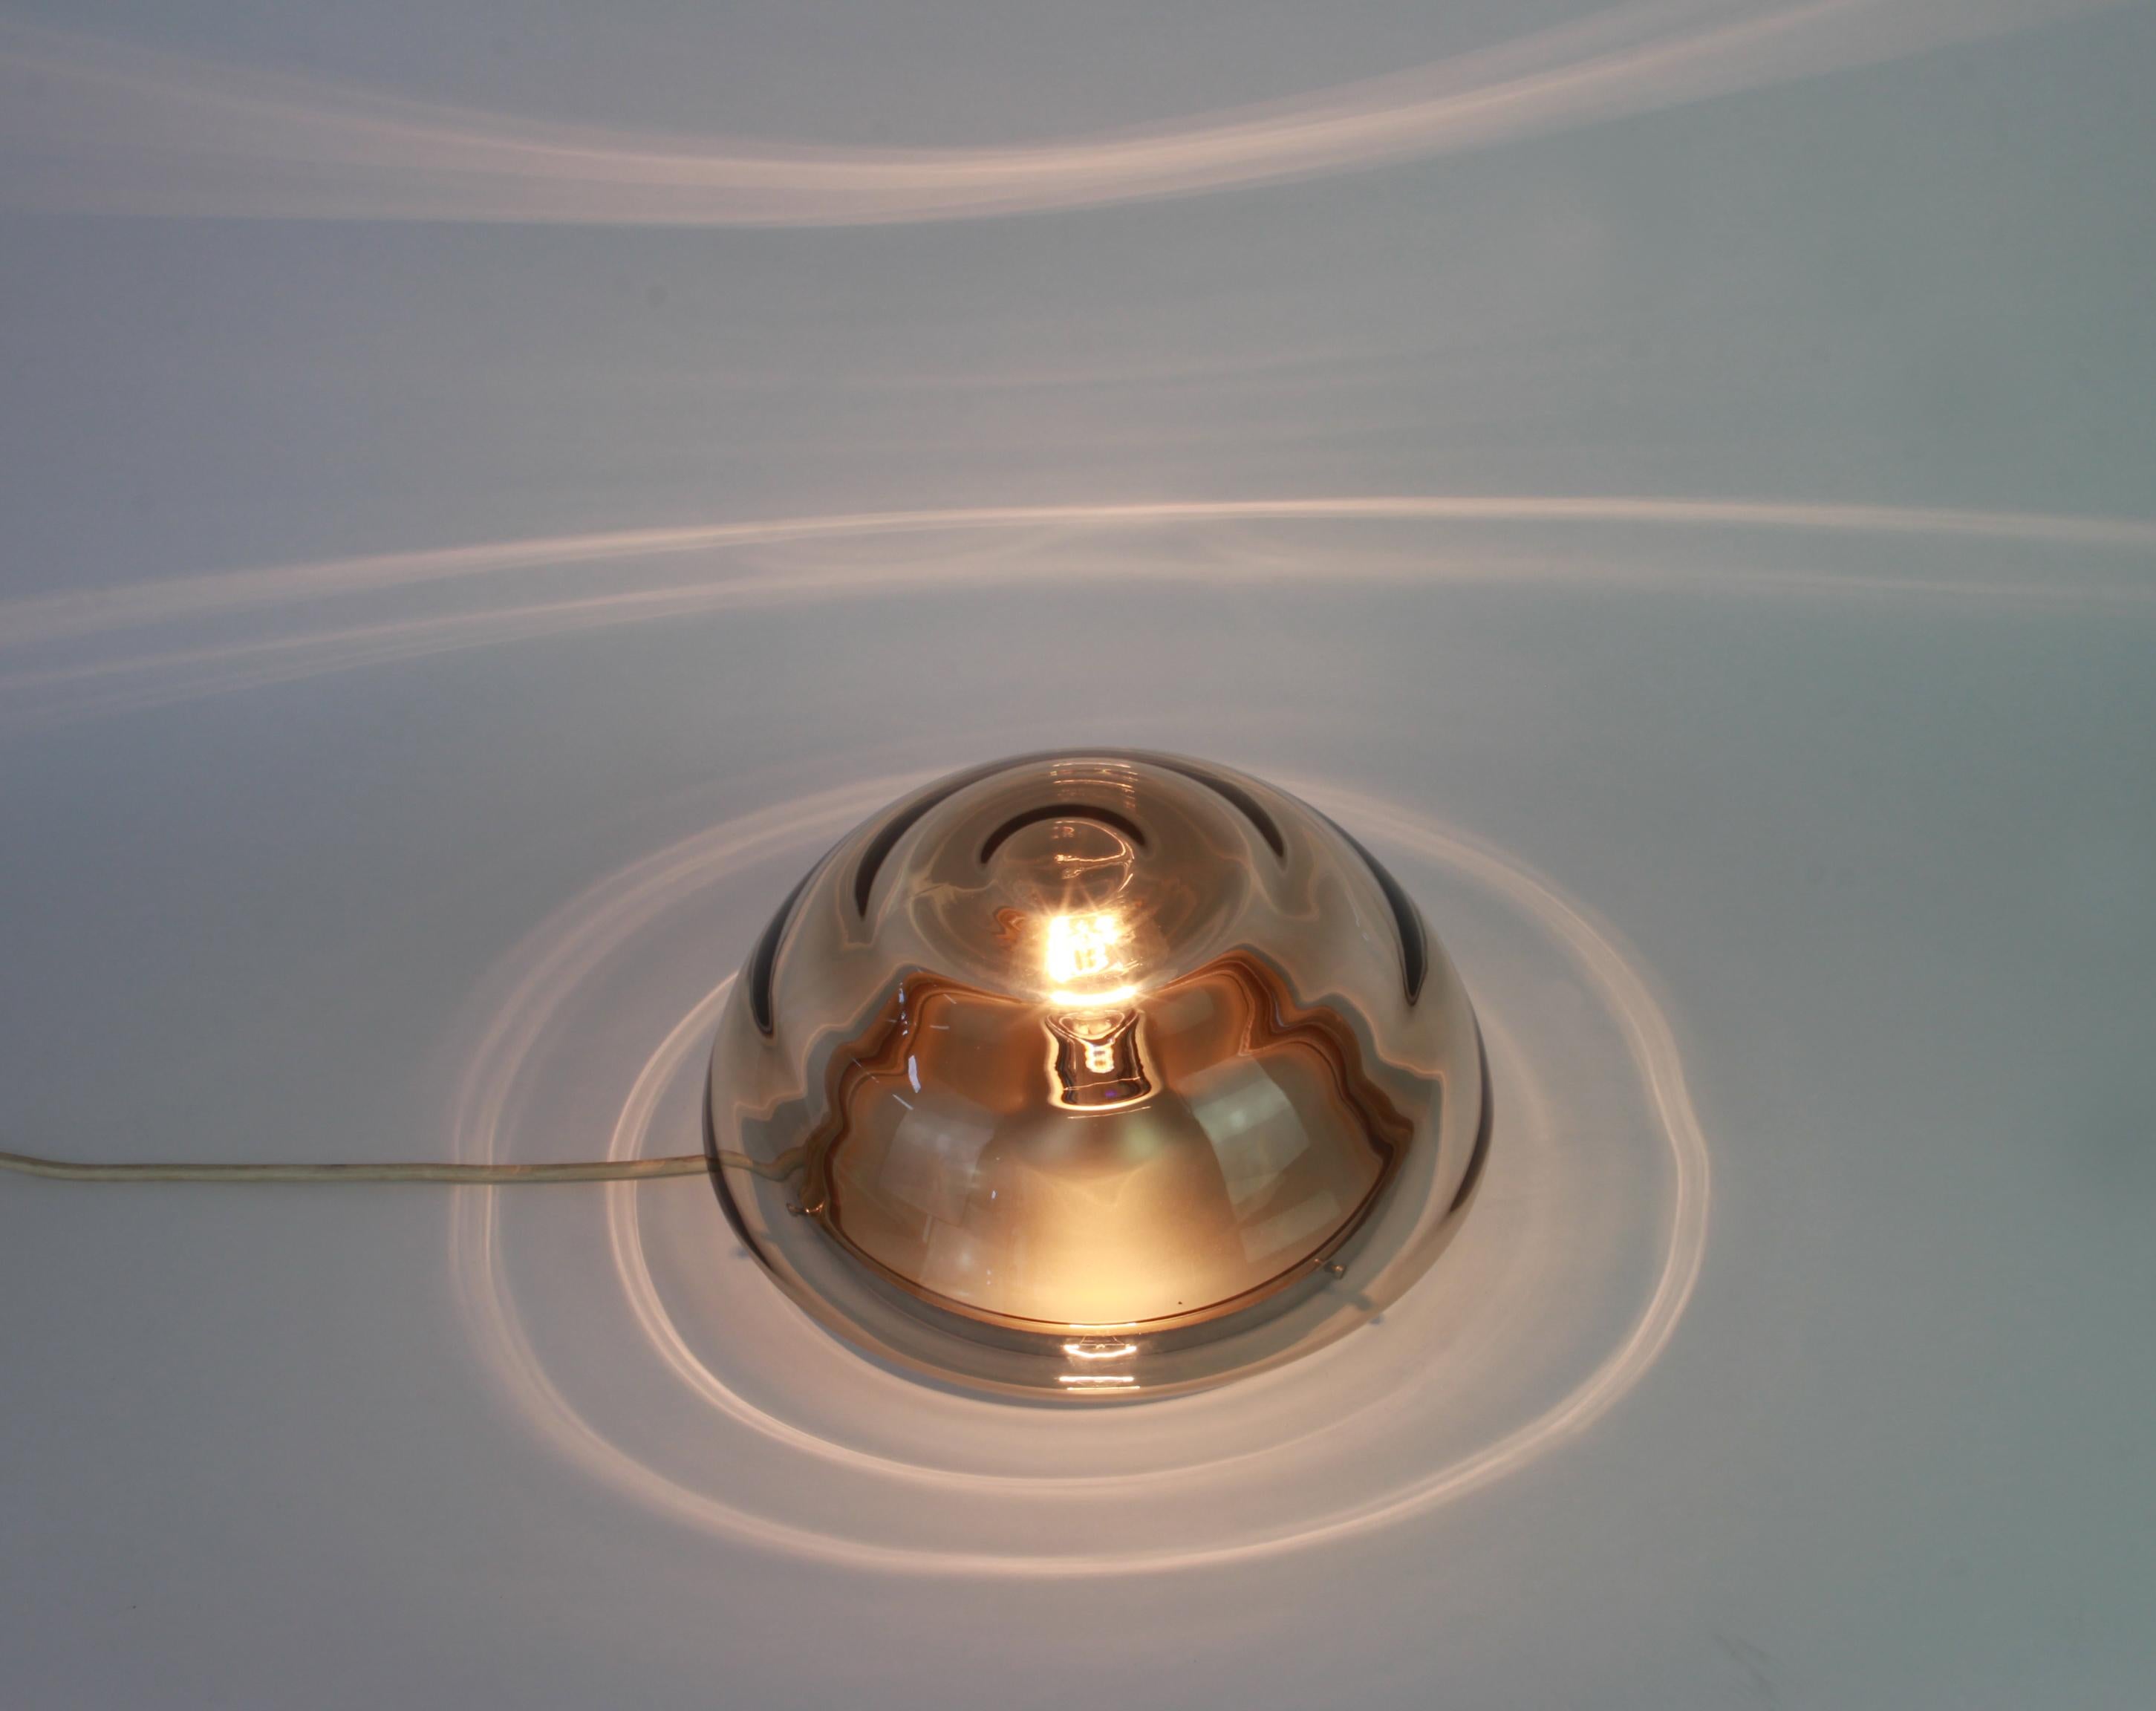 Vintage Sputnik Lampe aus den 1970er Jahren hergestellt von Cosack, Deutschland, 1970er Jahre.
Diese Lampe kann sowohl als Deckenlampe als auch als Wandlampe verwendet werden.
Wunderschöne Form aus Murano-Glas.
Fassungen: 1 x E27 Standard-Glühbirne